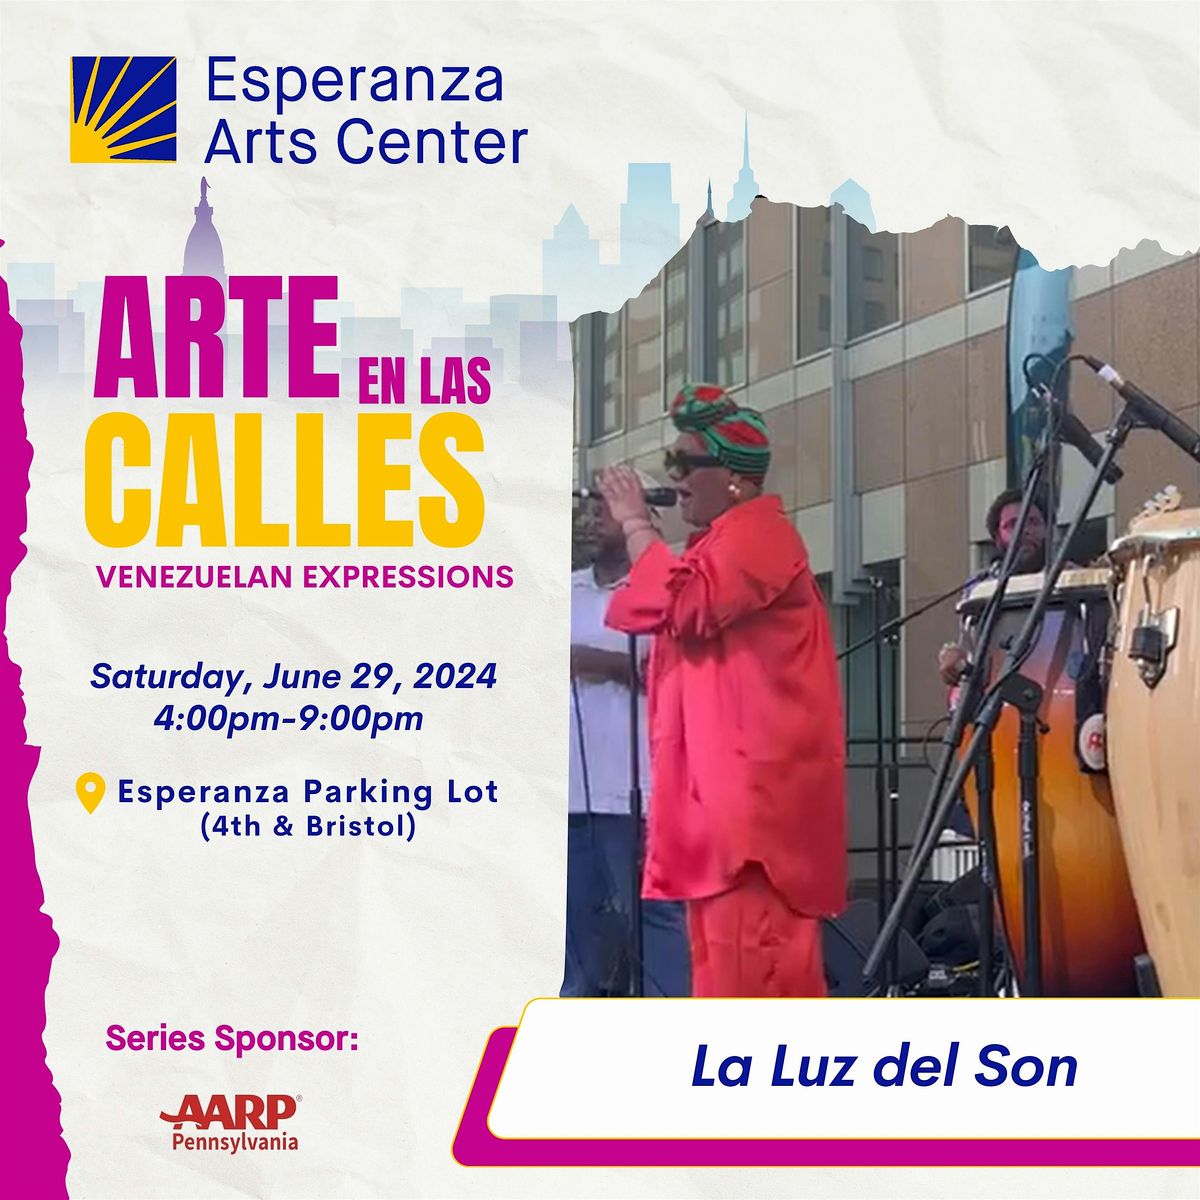 Arte en las Calles- Venezuelan Expressions Outdoor Community Celebration